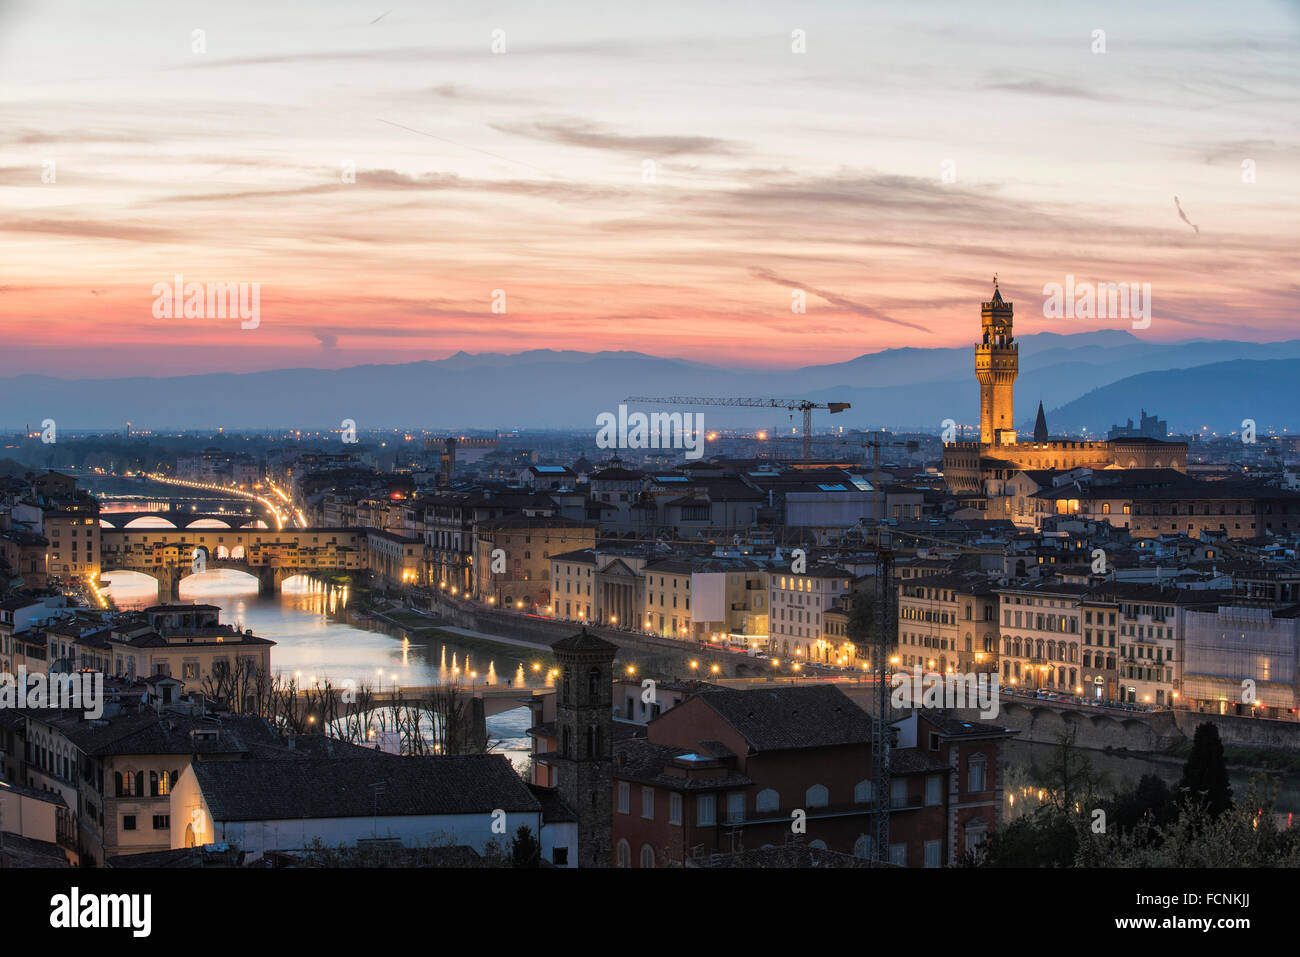 Una cartolina di Firenze panorama appena dopo il tramonto con lo skyline dei suoi famosi monumenti e dal fiume Arno Foto Stock